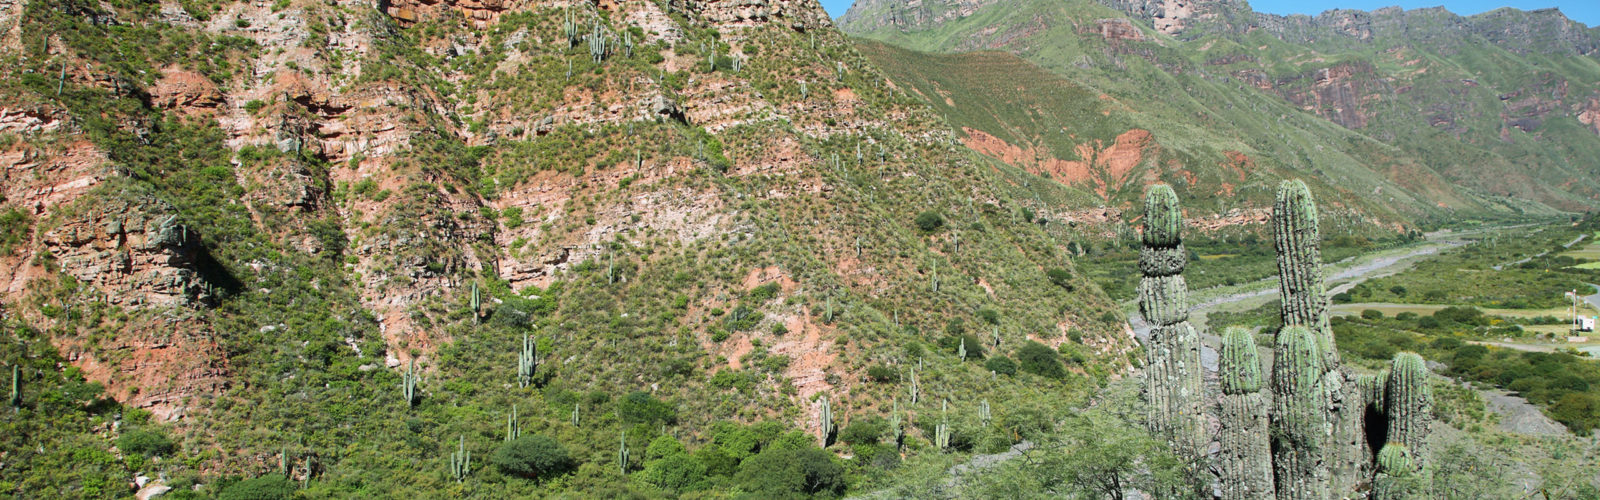 calchaqui-cactus-landscape